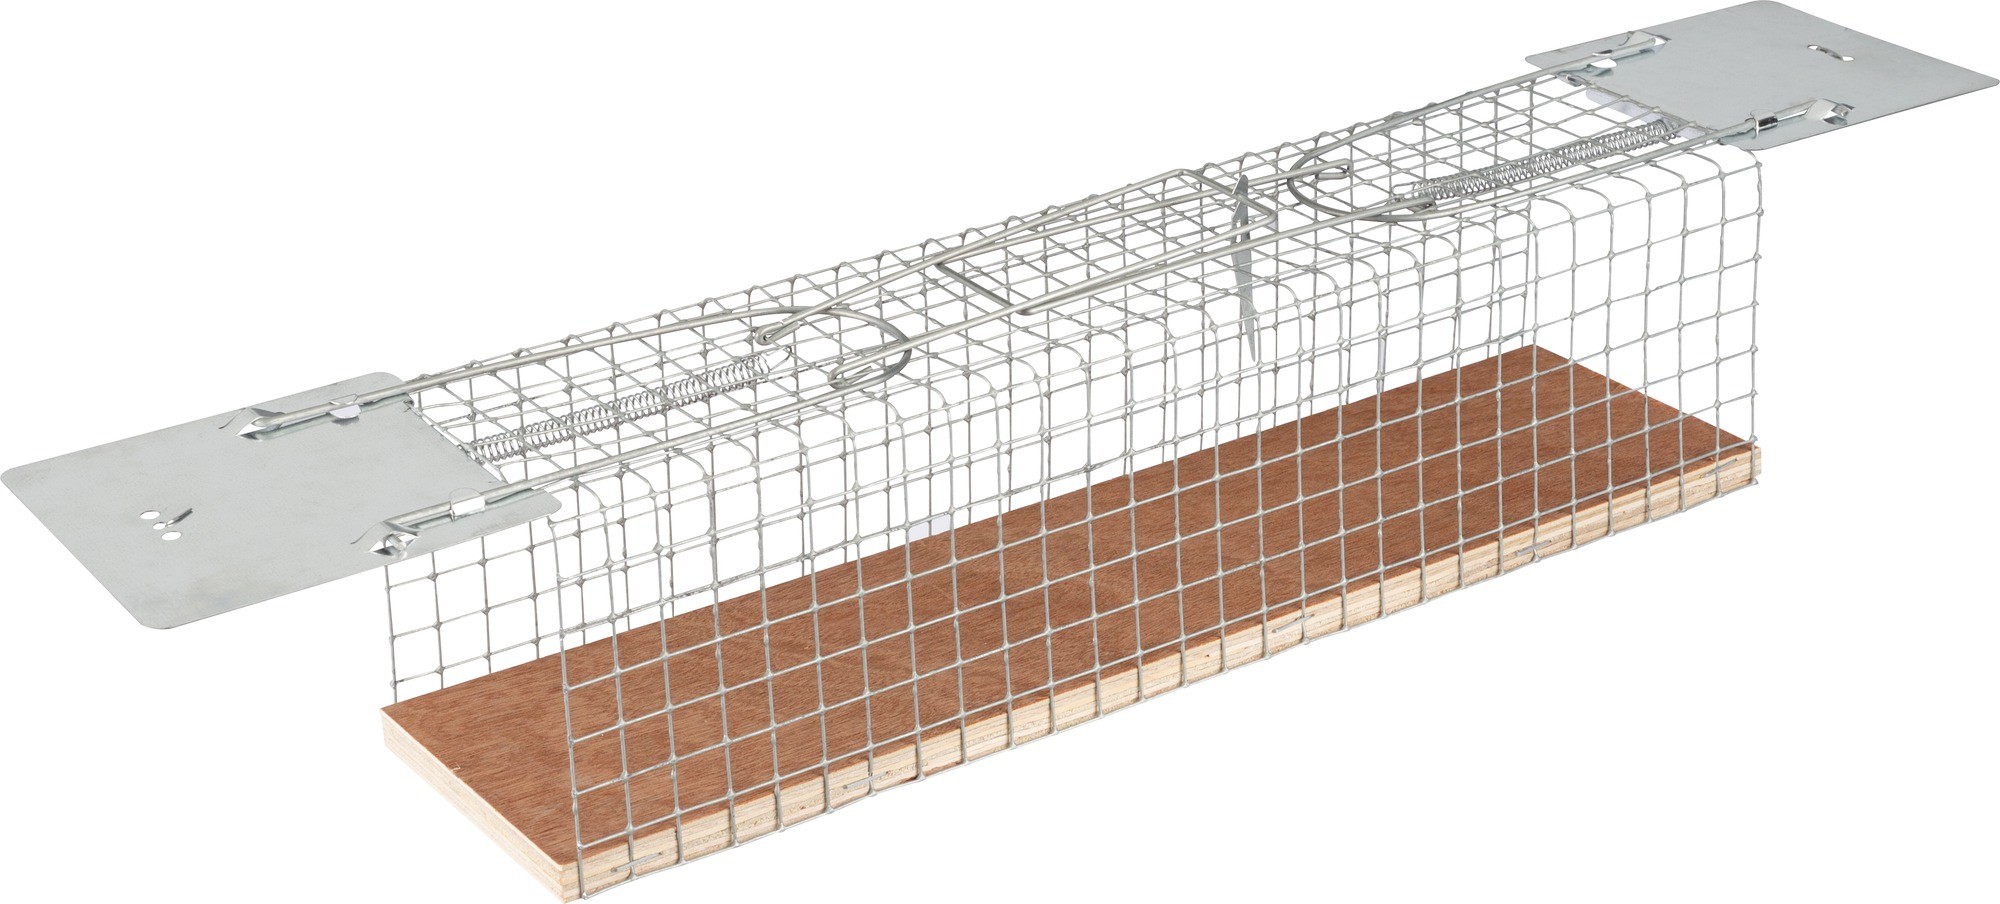 Piège à souris Wire Cage Alive - Largeur 5,5 cm - Longueur 12 cm -  Profondeur 5,5 cm